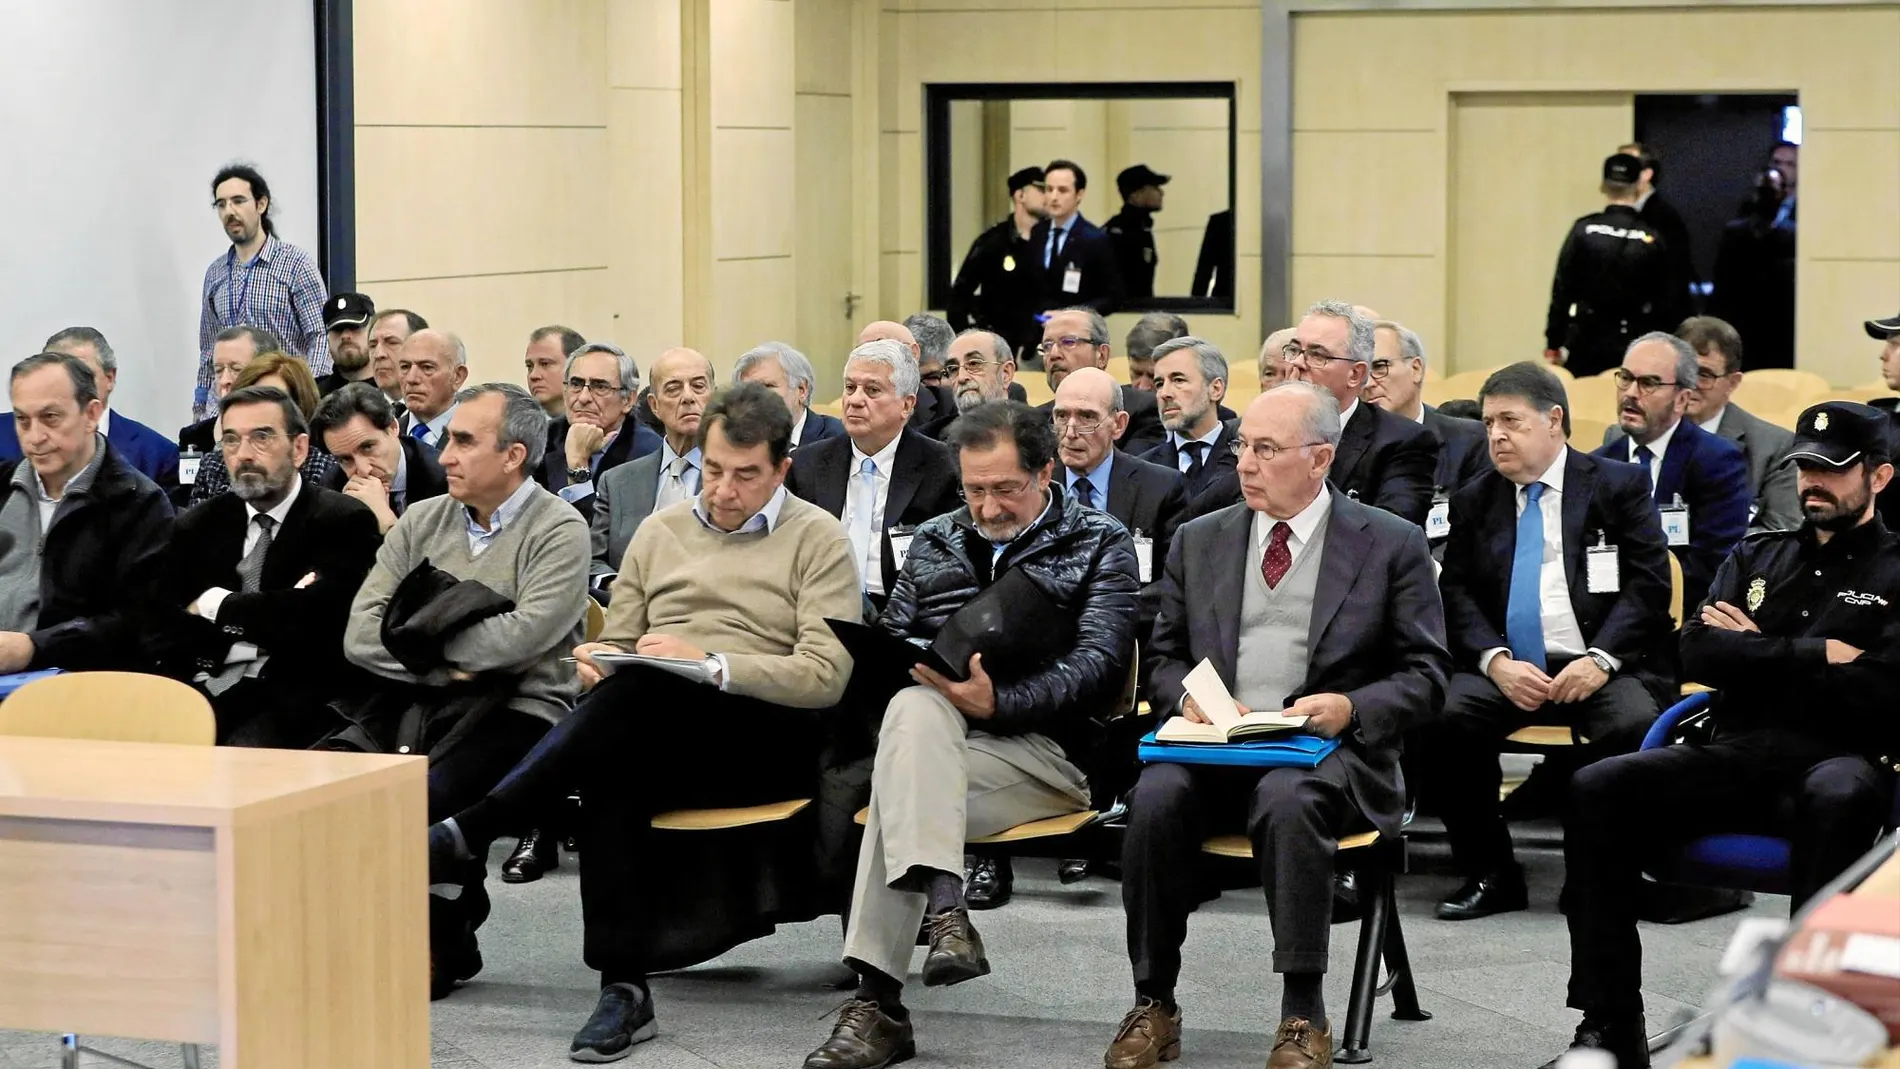 Los acusados por la salida a bolsa de Bankia, con su expresidente Rodrigo Rato -a la derecha- entre ellos, durante la sesión de ayer en la Audiencia Nacional